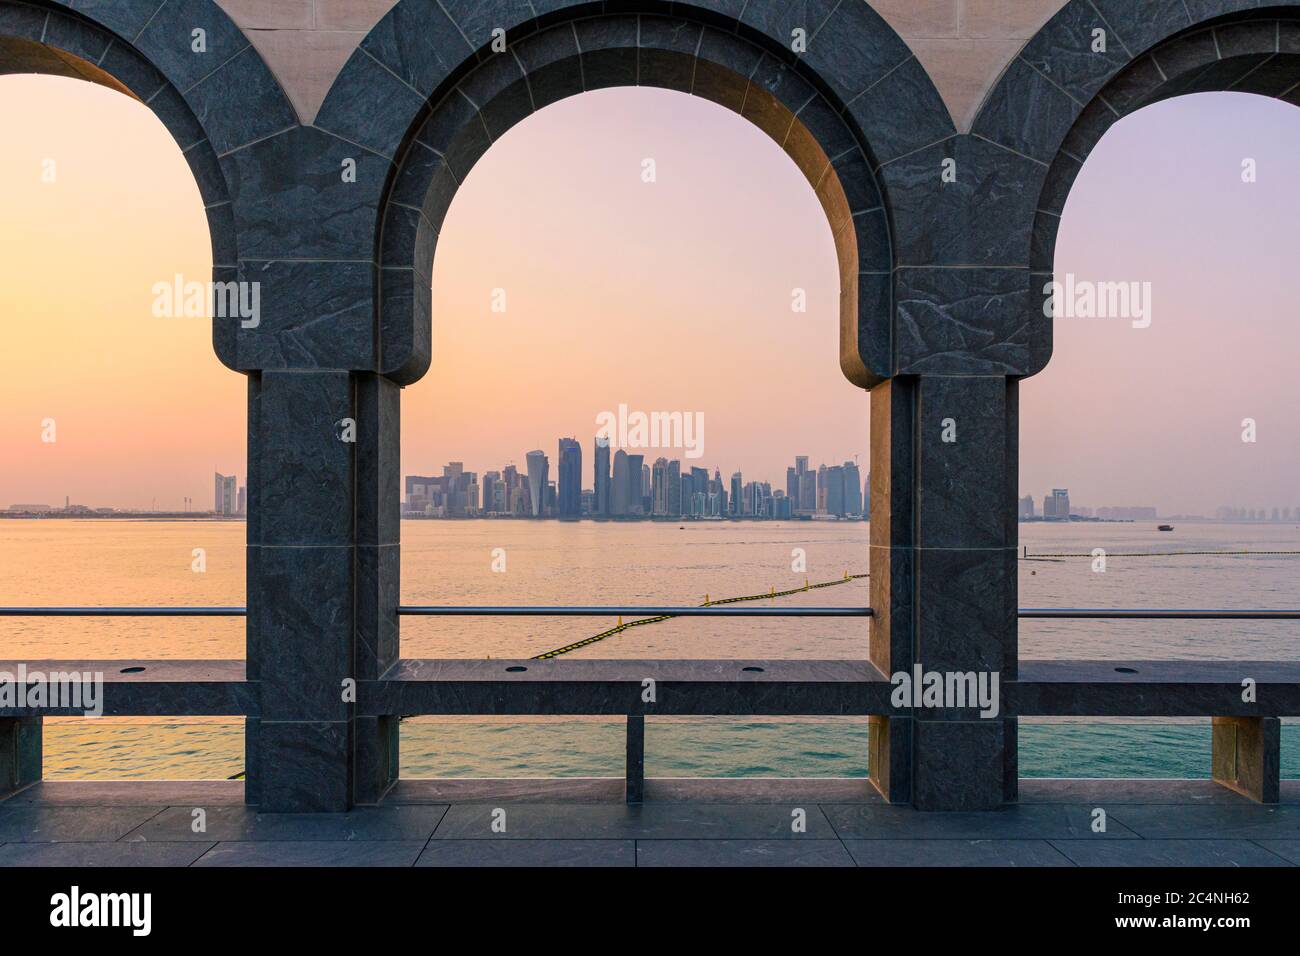 Vista dello skyline della città di Doha al tramonto attraverso gli archi del cortile presso il Museo d'Arte Islamica, Doha, Qatar Foto Stock